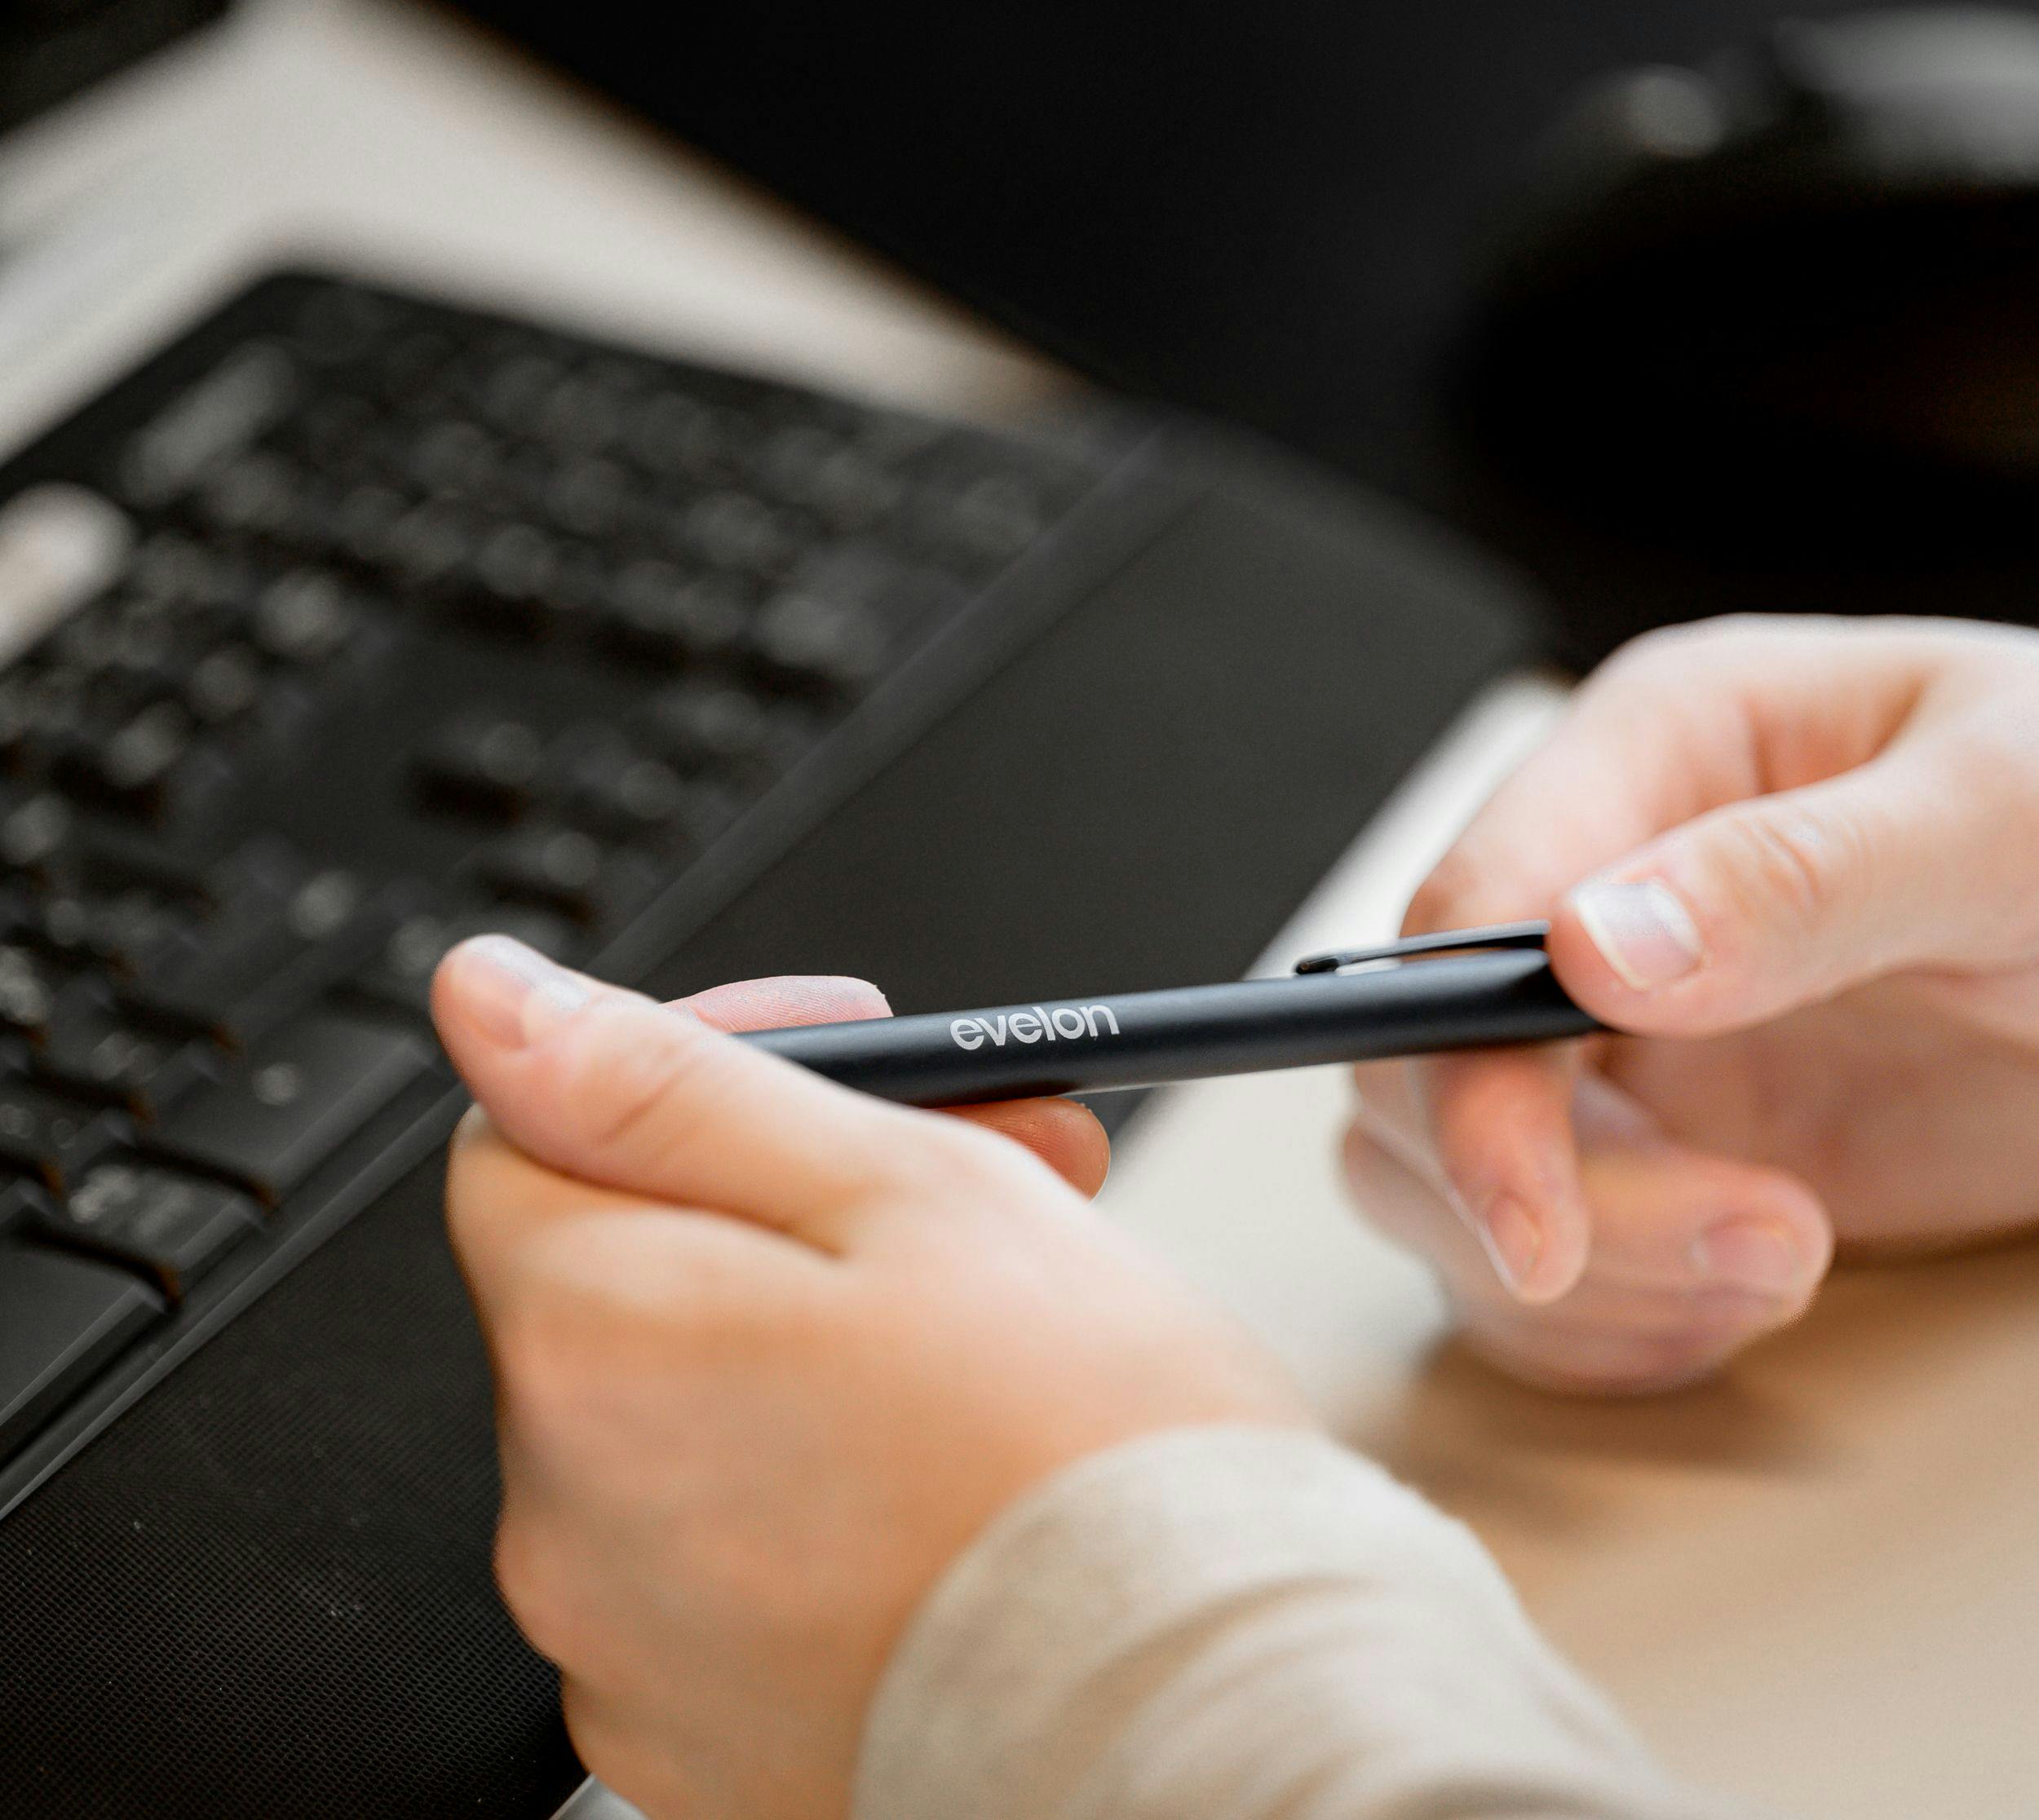 Bilde av hender som holder en penn og et tastatur